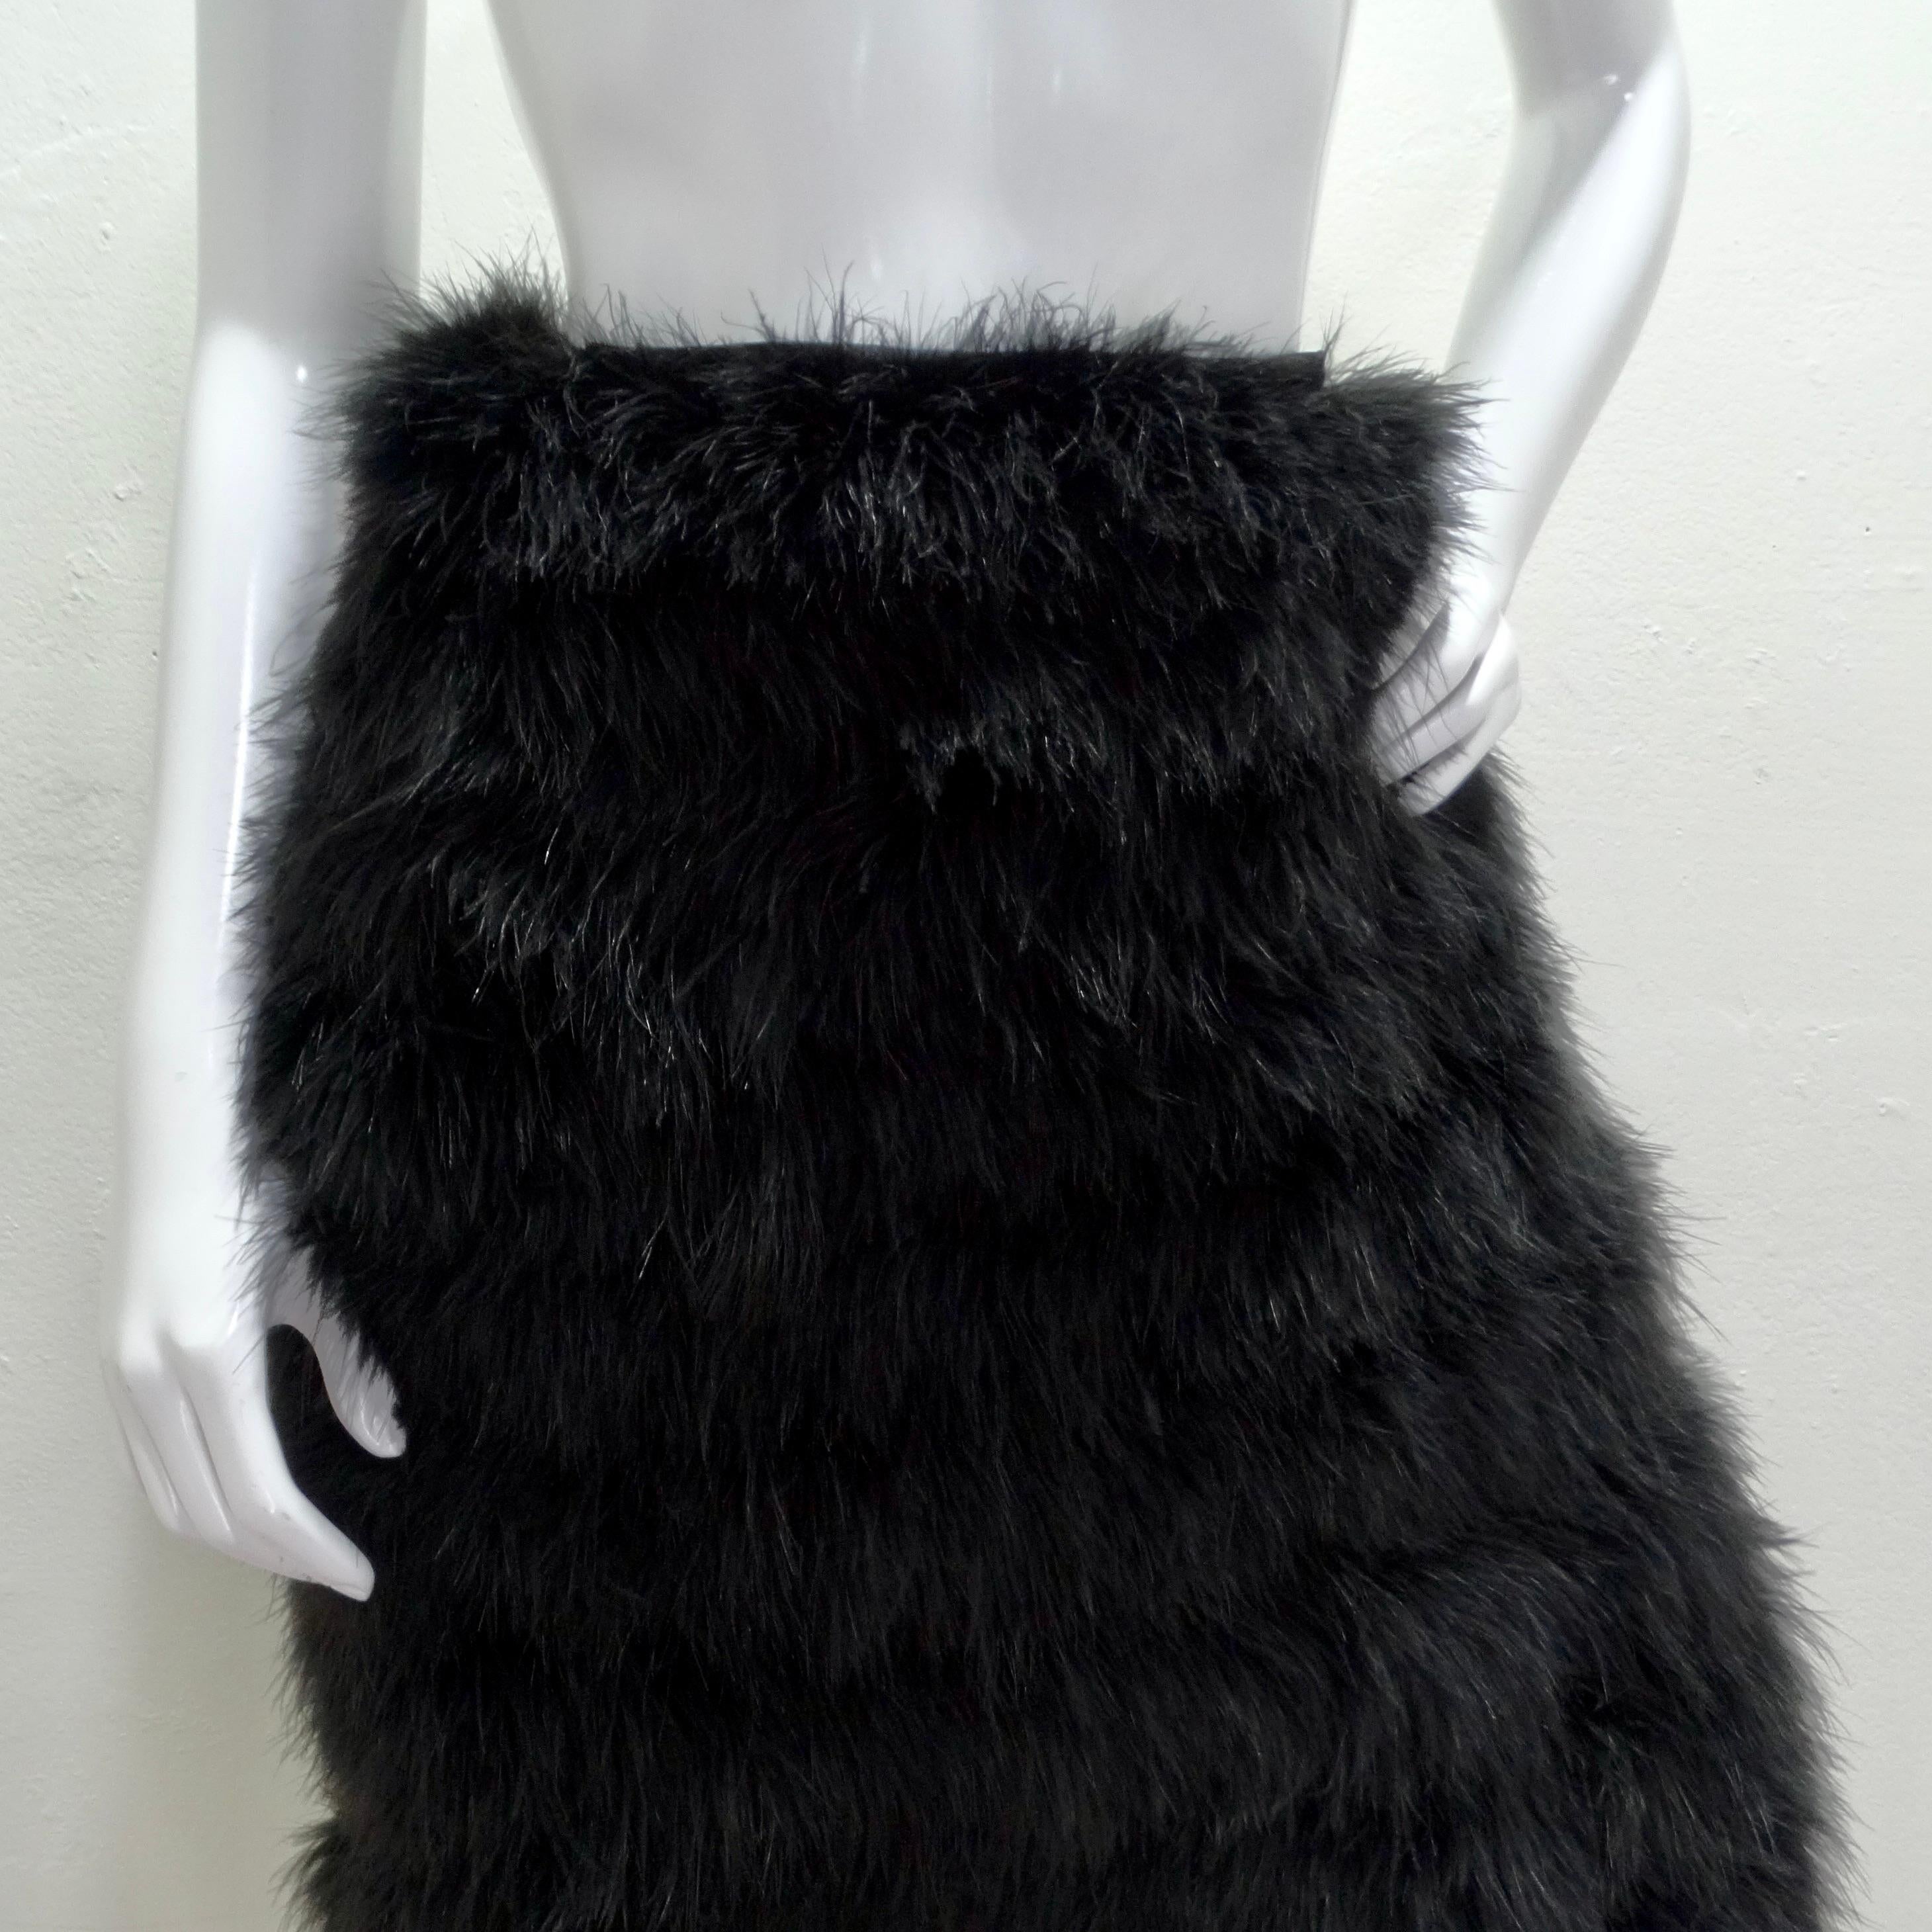 Der exquisite 1960s Saks Fifth Avenue Black Marabou Feather Midi Rock ist ein Statement-Stück, das Luxus und Raffinesse ausstrahlt. Dieser mit viel Liebe zum Detail gefertigte mittellange Rock ist ein wahres Kunstwerk, mit dem Sie einen kühnen und